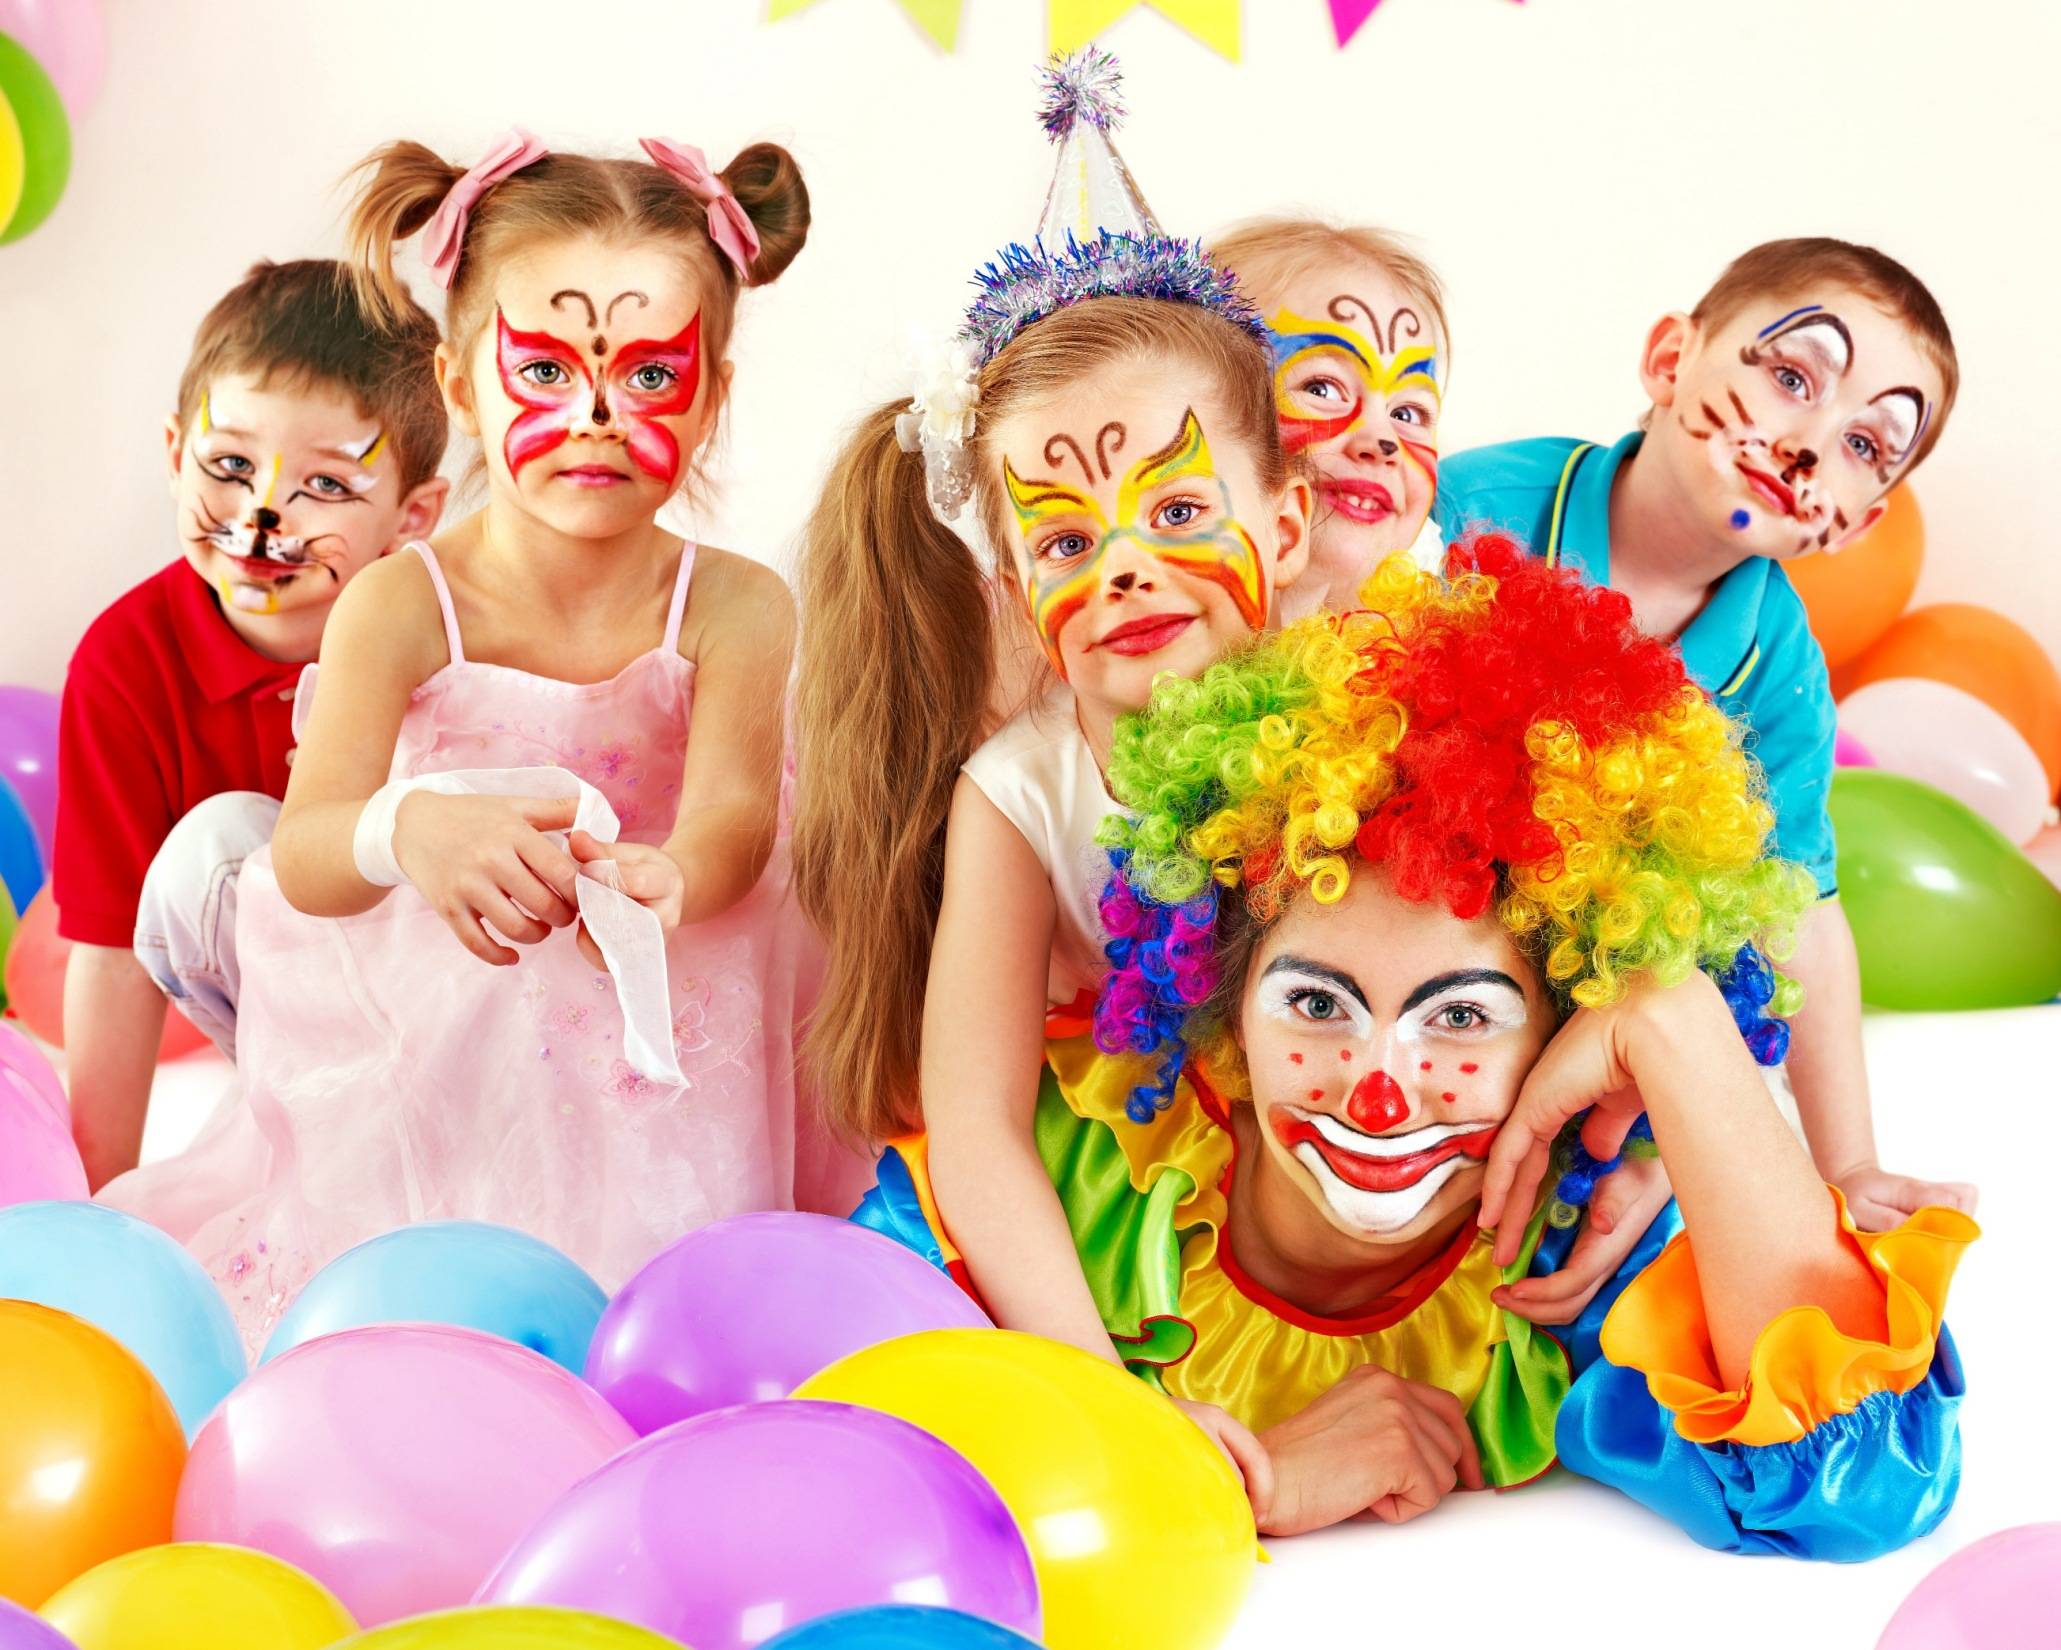 Юмор про цирк: клоунов у нас своих хватает...